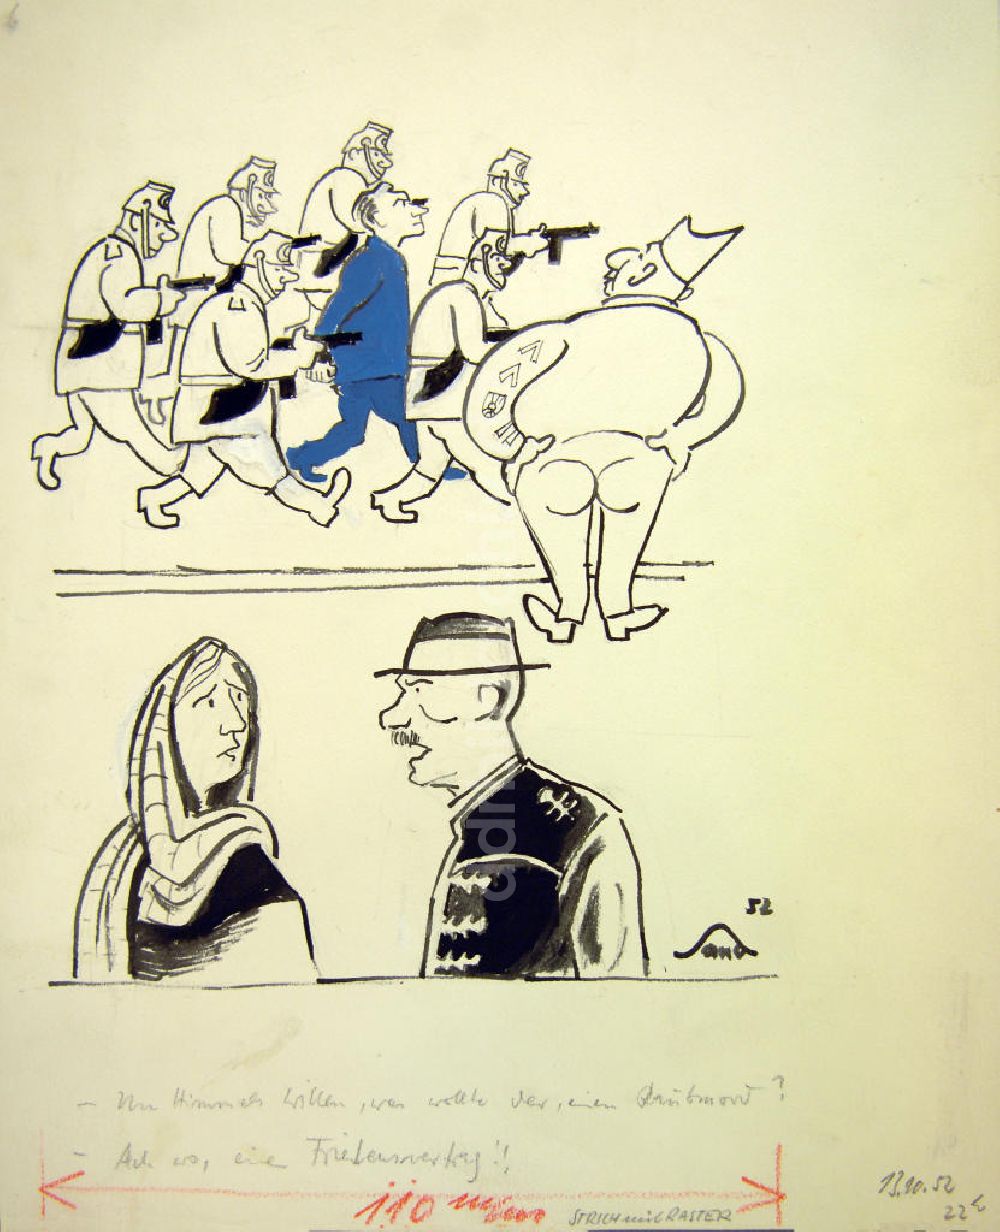 Berlin: Zeichnung von Herbert Sandberg Raubmord? aus dem Jahr 1952